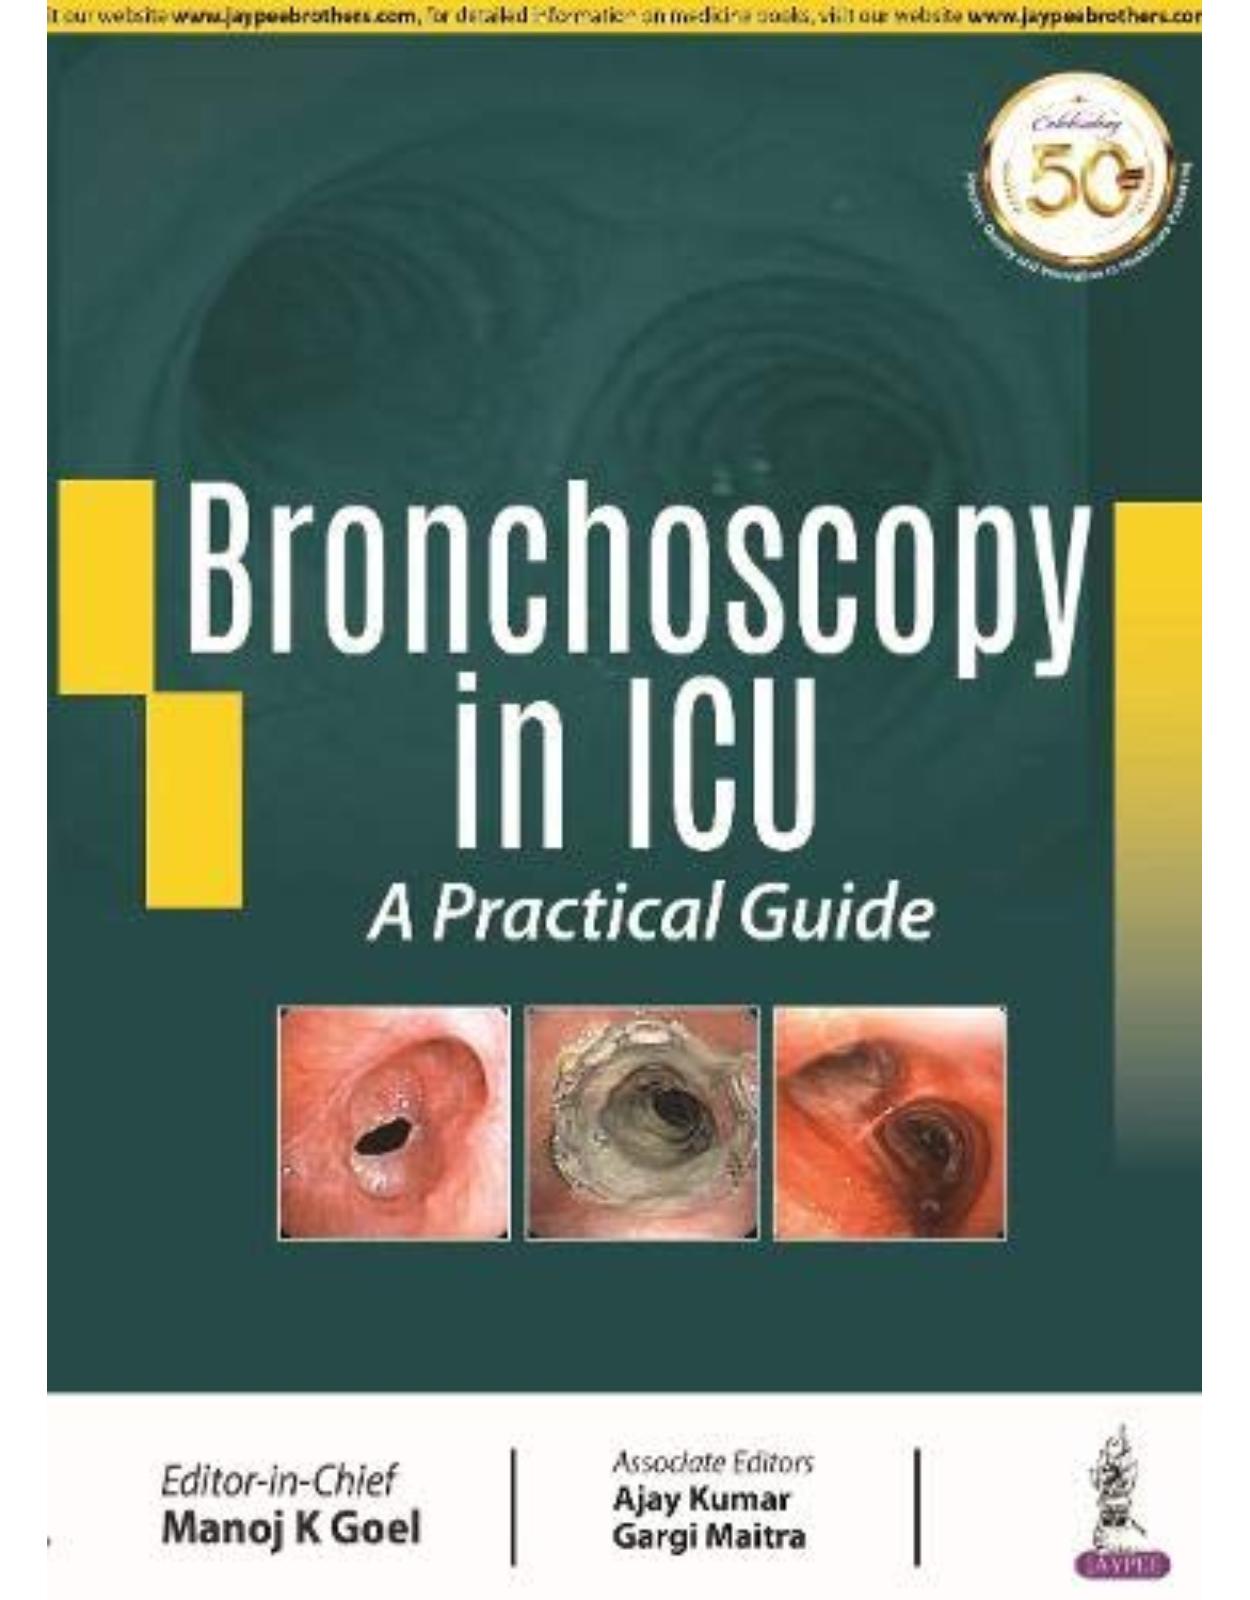 Bronchoscopy in ICU: A Practical Guide